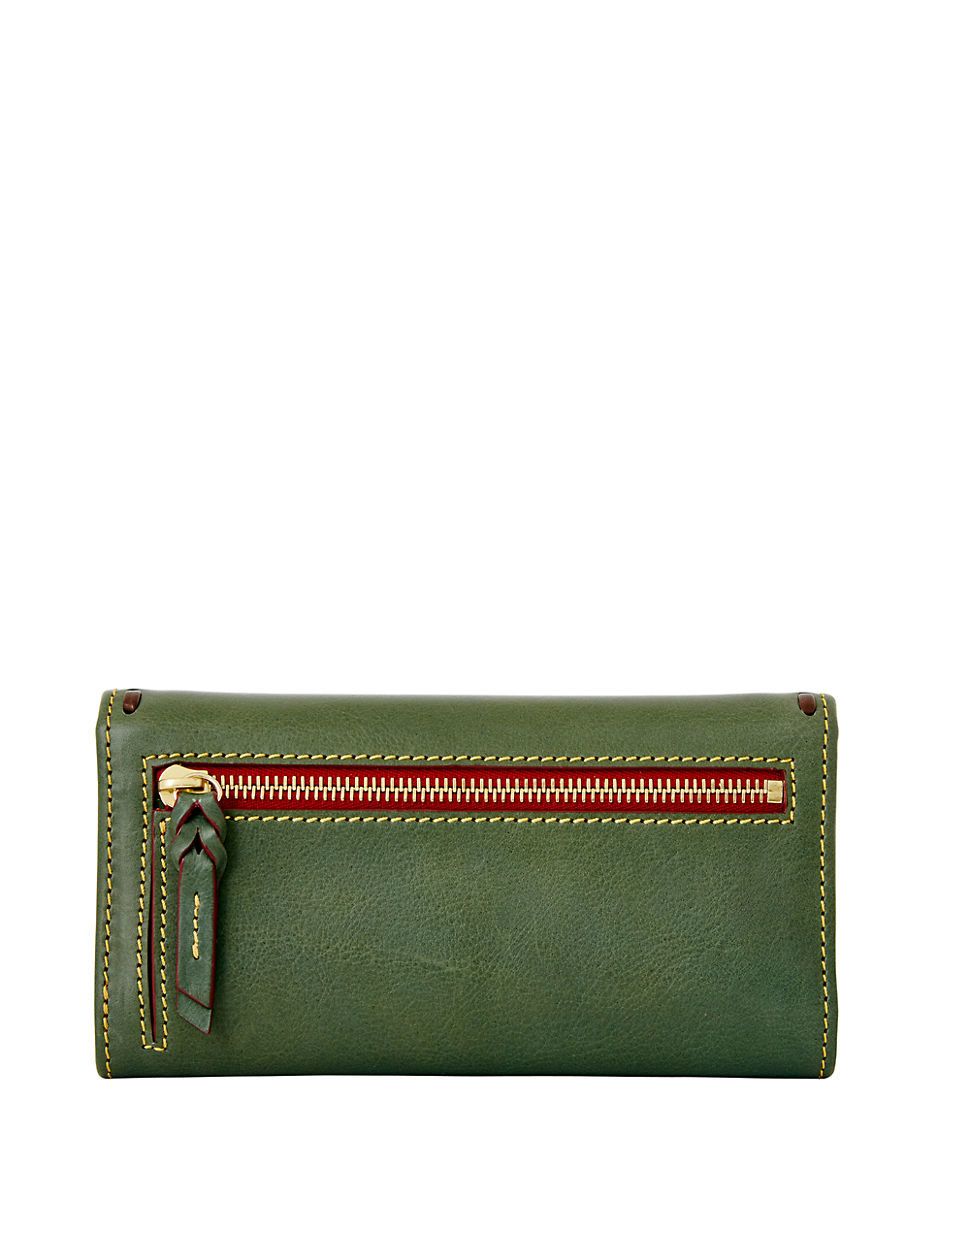 Dooney & Bourke Leather Checkbook Wallet in Green - Lyst